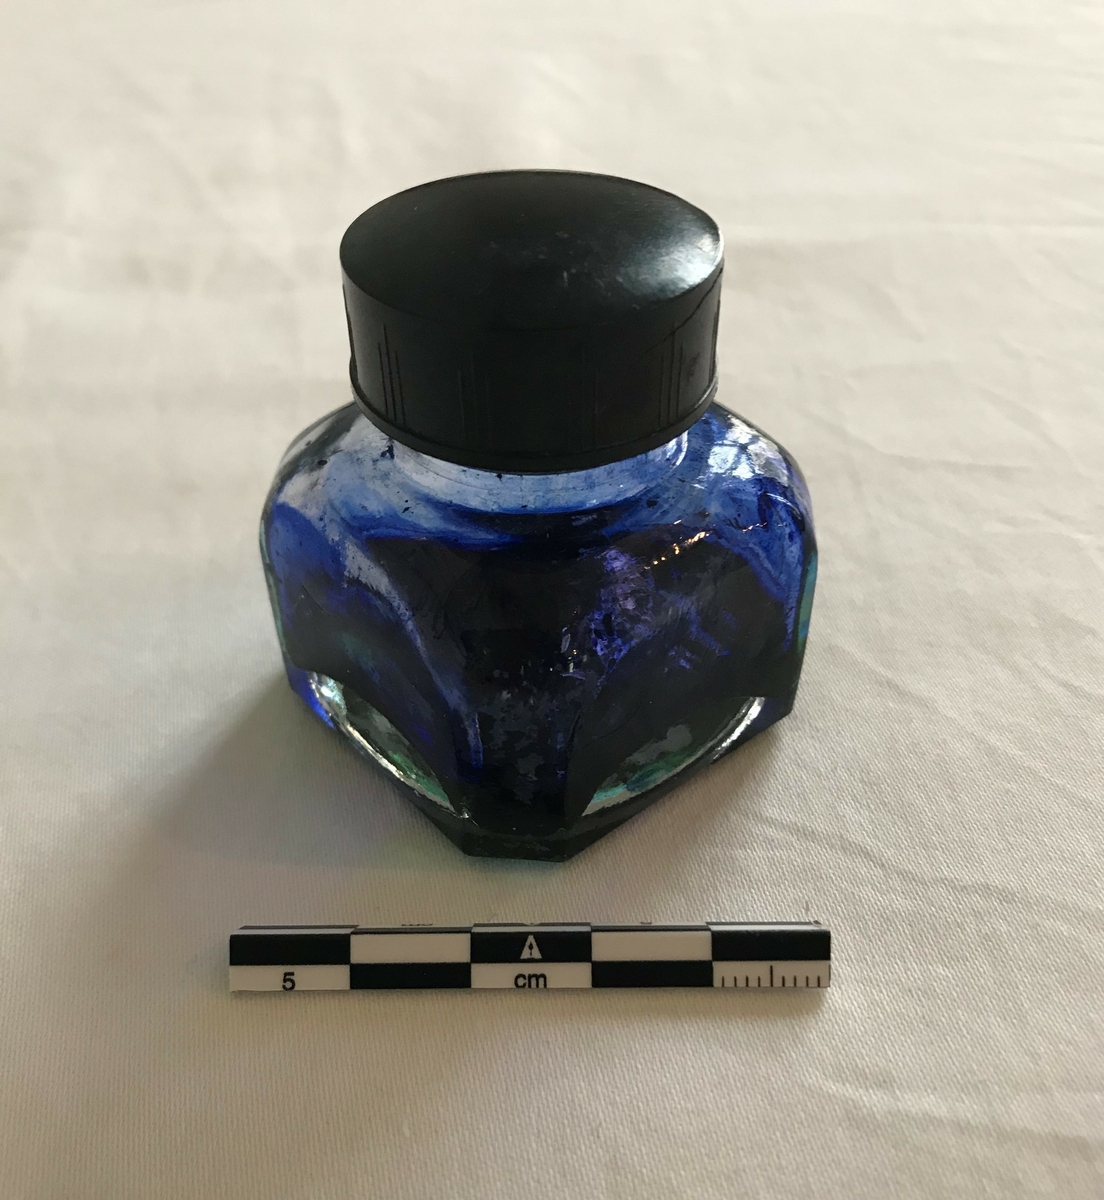 Åttekantet glasflaske med skrukork. Rester av blått blekk i flasken. 